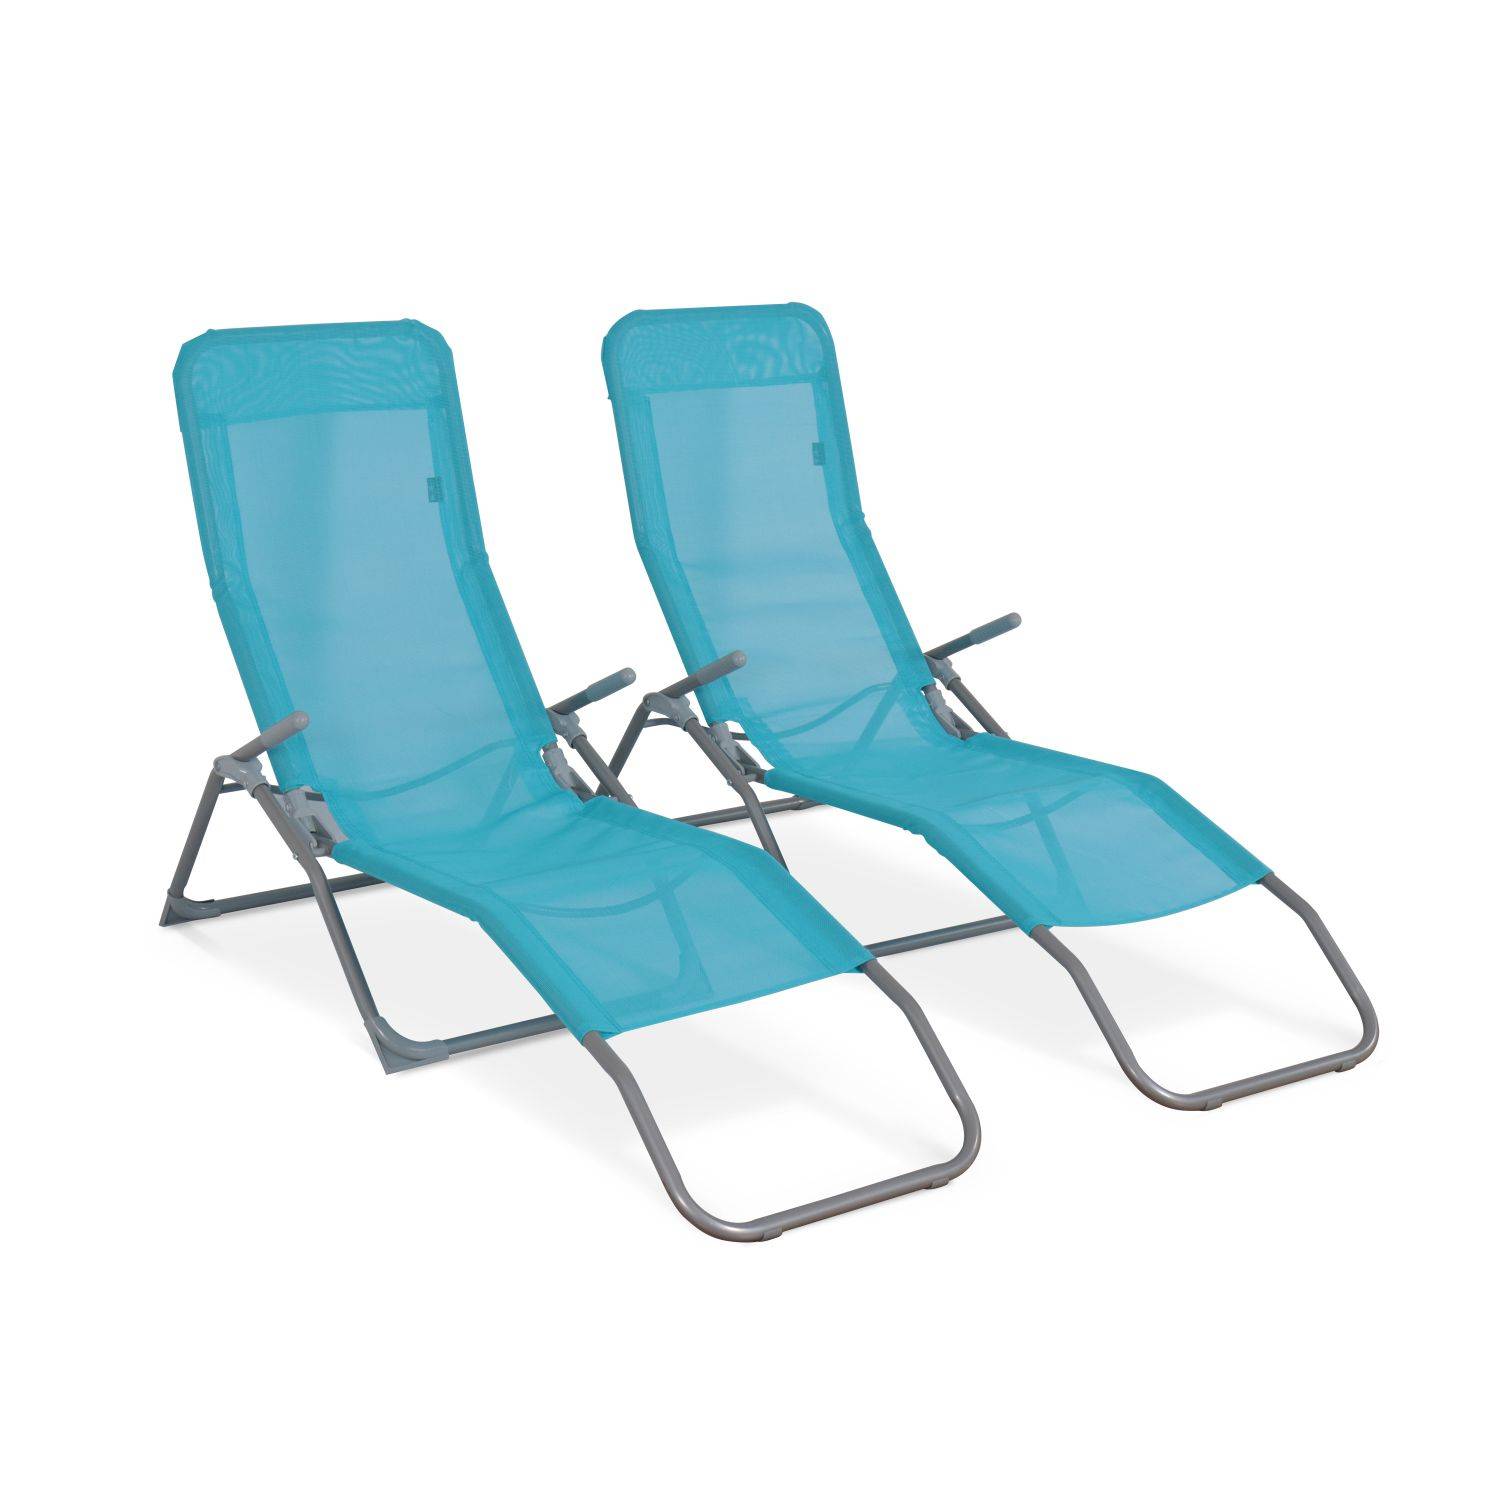 Set van 2 opvouwbare ligstoelen - Levito Turkoois- Ligstoelen van textileen, 2 posities, opvouwbare ligstoelen Photo2